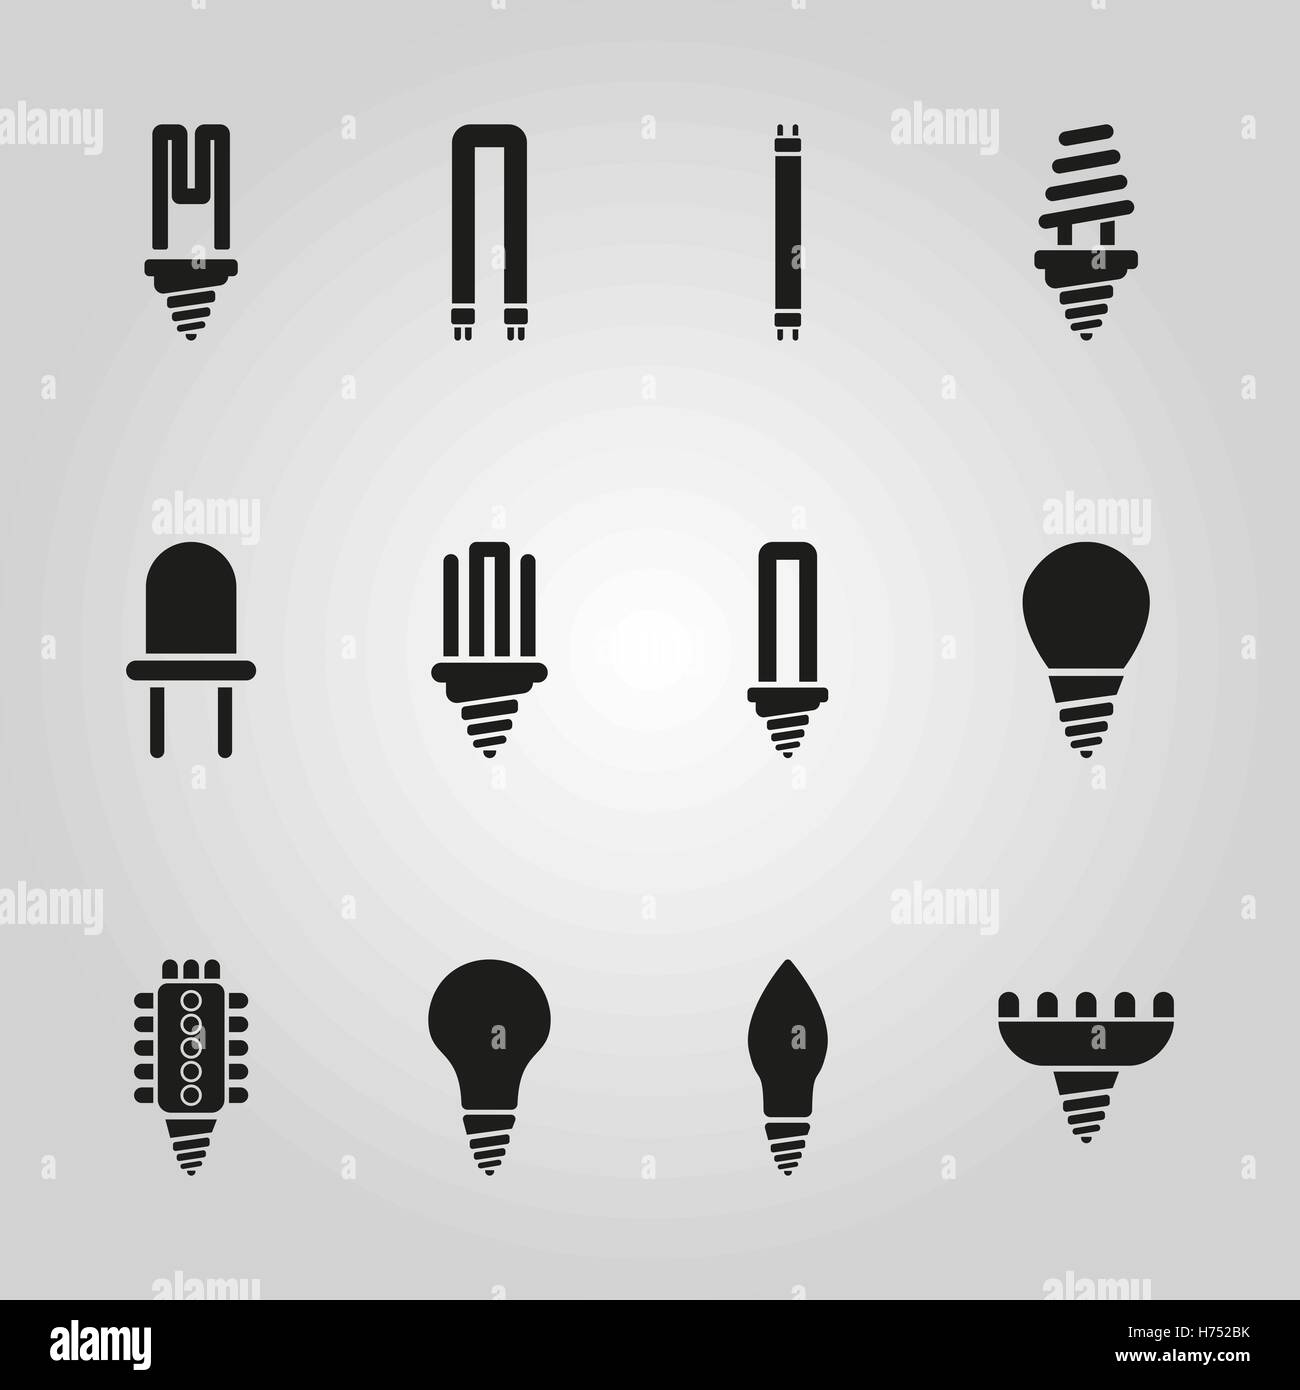 Das Glühbirnen-Symbol set 12 Symbole. Lampe und Lampe, Glühbirne Symbol.  UI. Web. Logo. Zeichen. Flaches Design. Ca. Stock Vektor Stock-Vektorgrafik  - Alamy